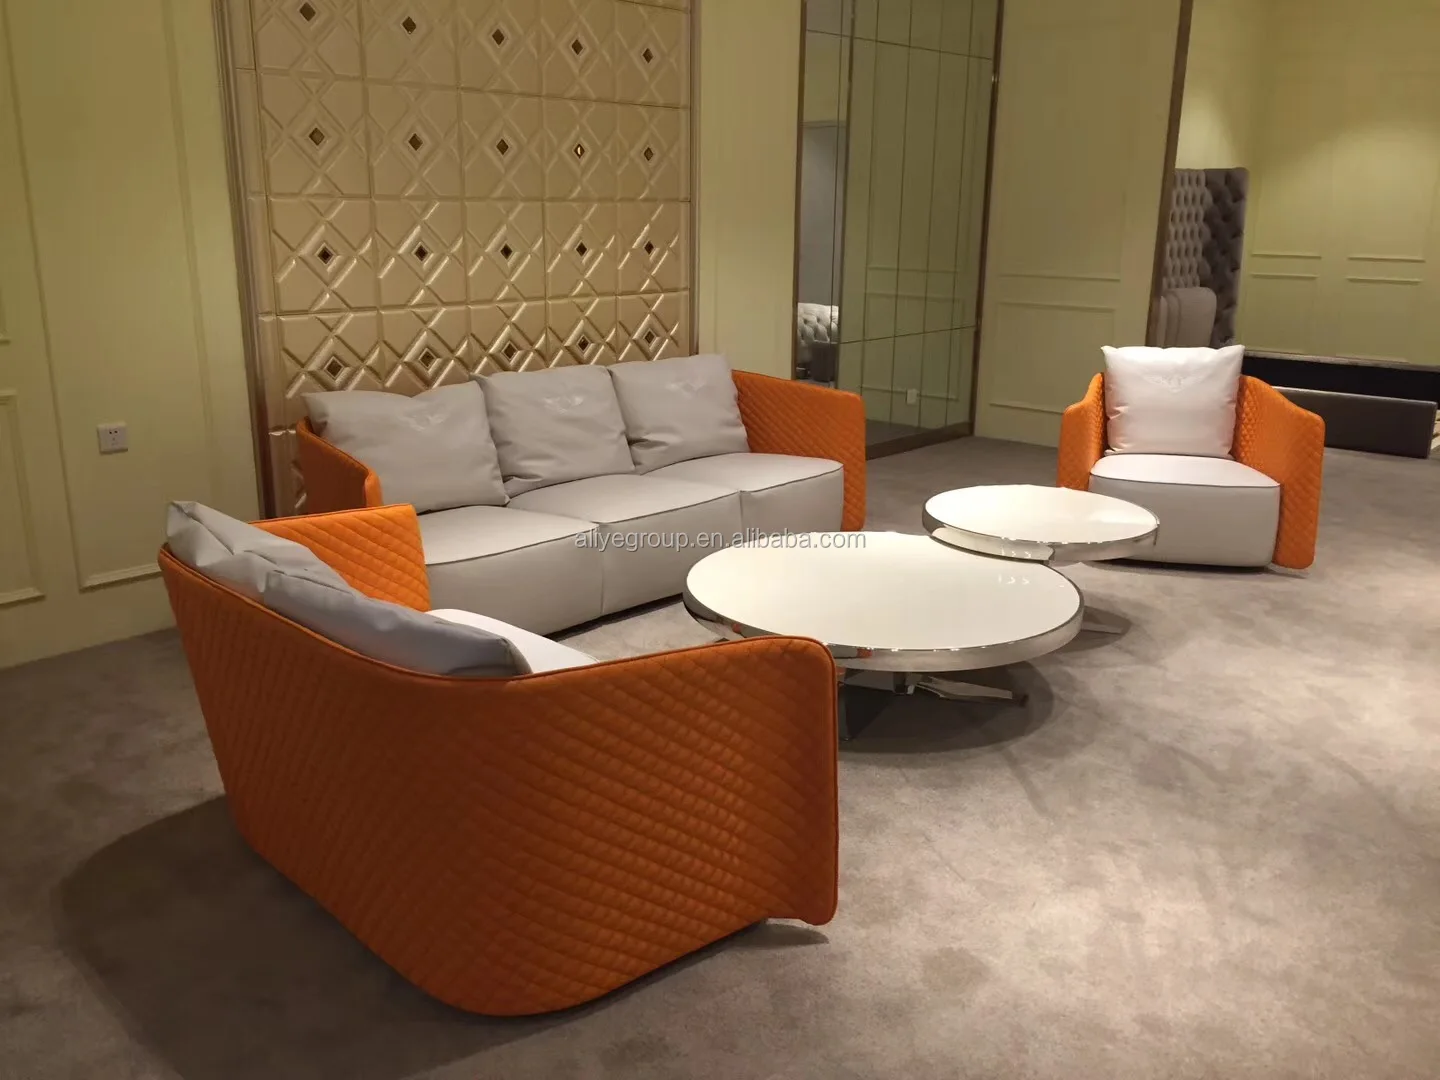 Elegant Living Room Furniture Sets And Modern Leather Sofa Set